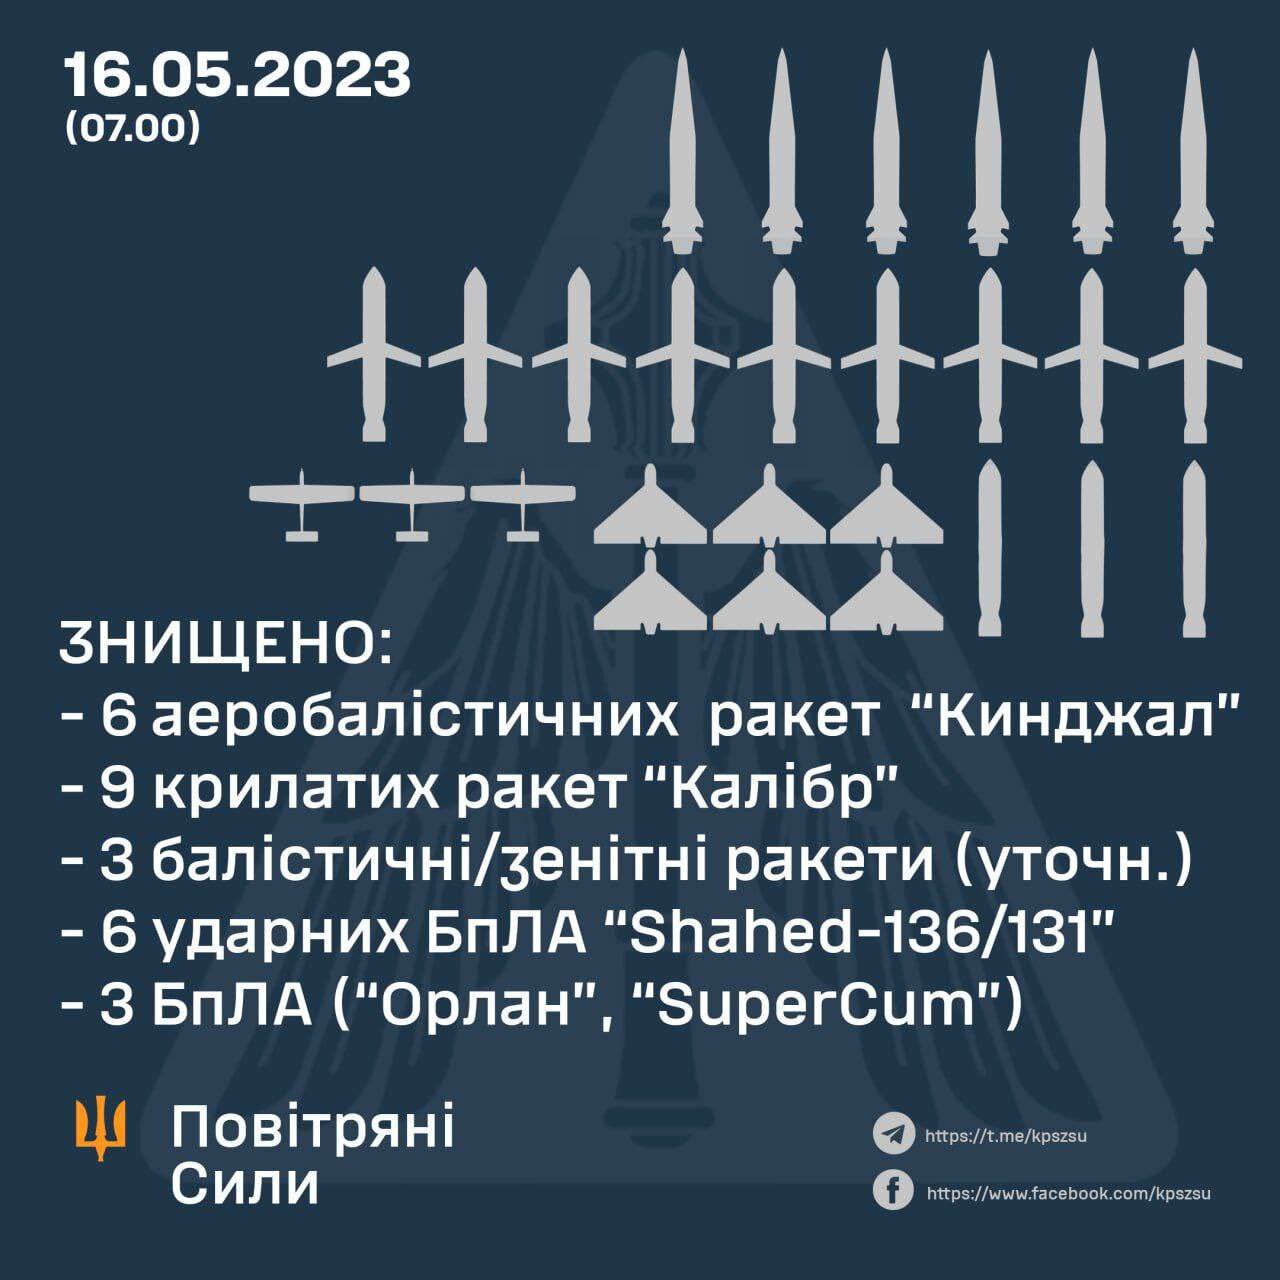 防空系統發威 烏克蘭擊落6枚俄極音速飛彈